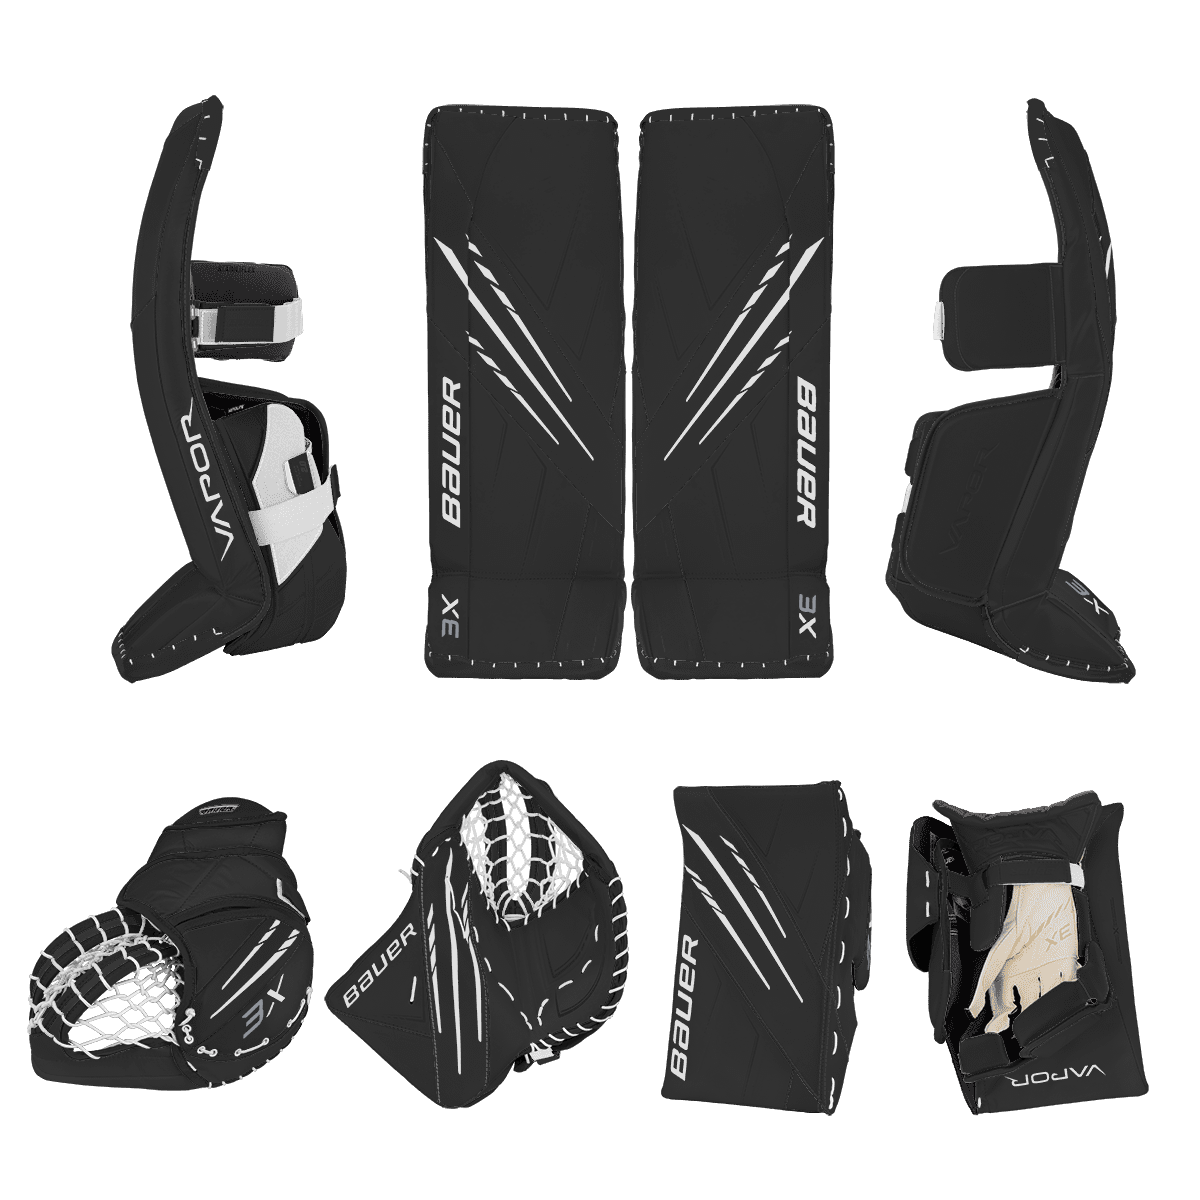 Bauer Vapor 3X Goalie Equipment - Custom Design - Senior Black/White Inspiration